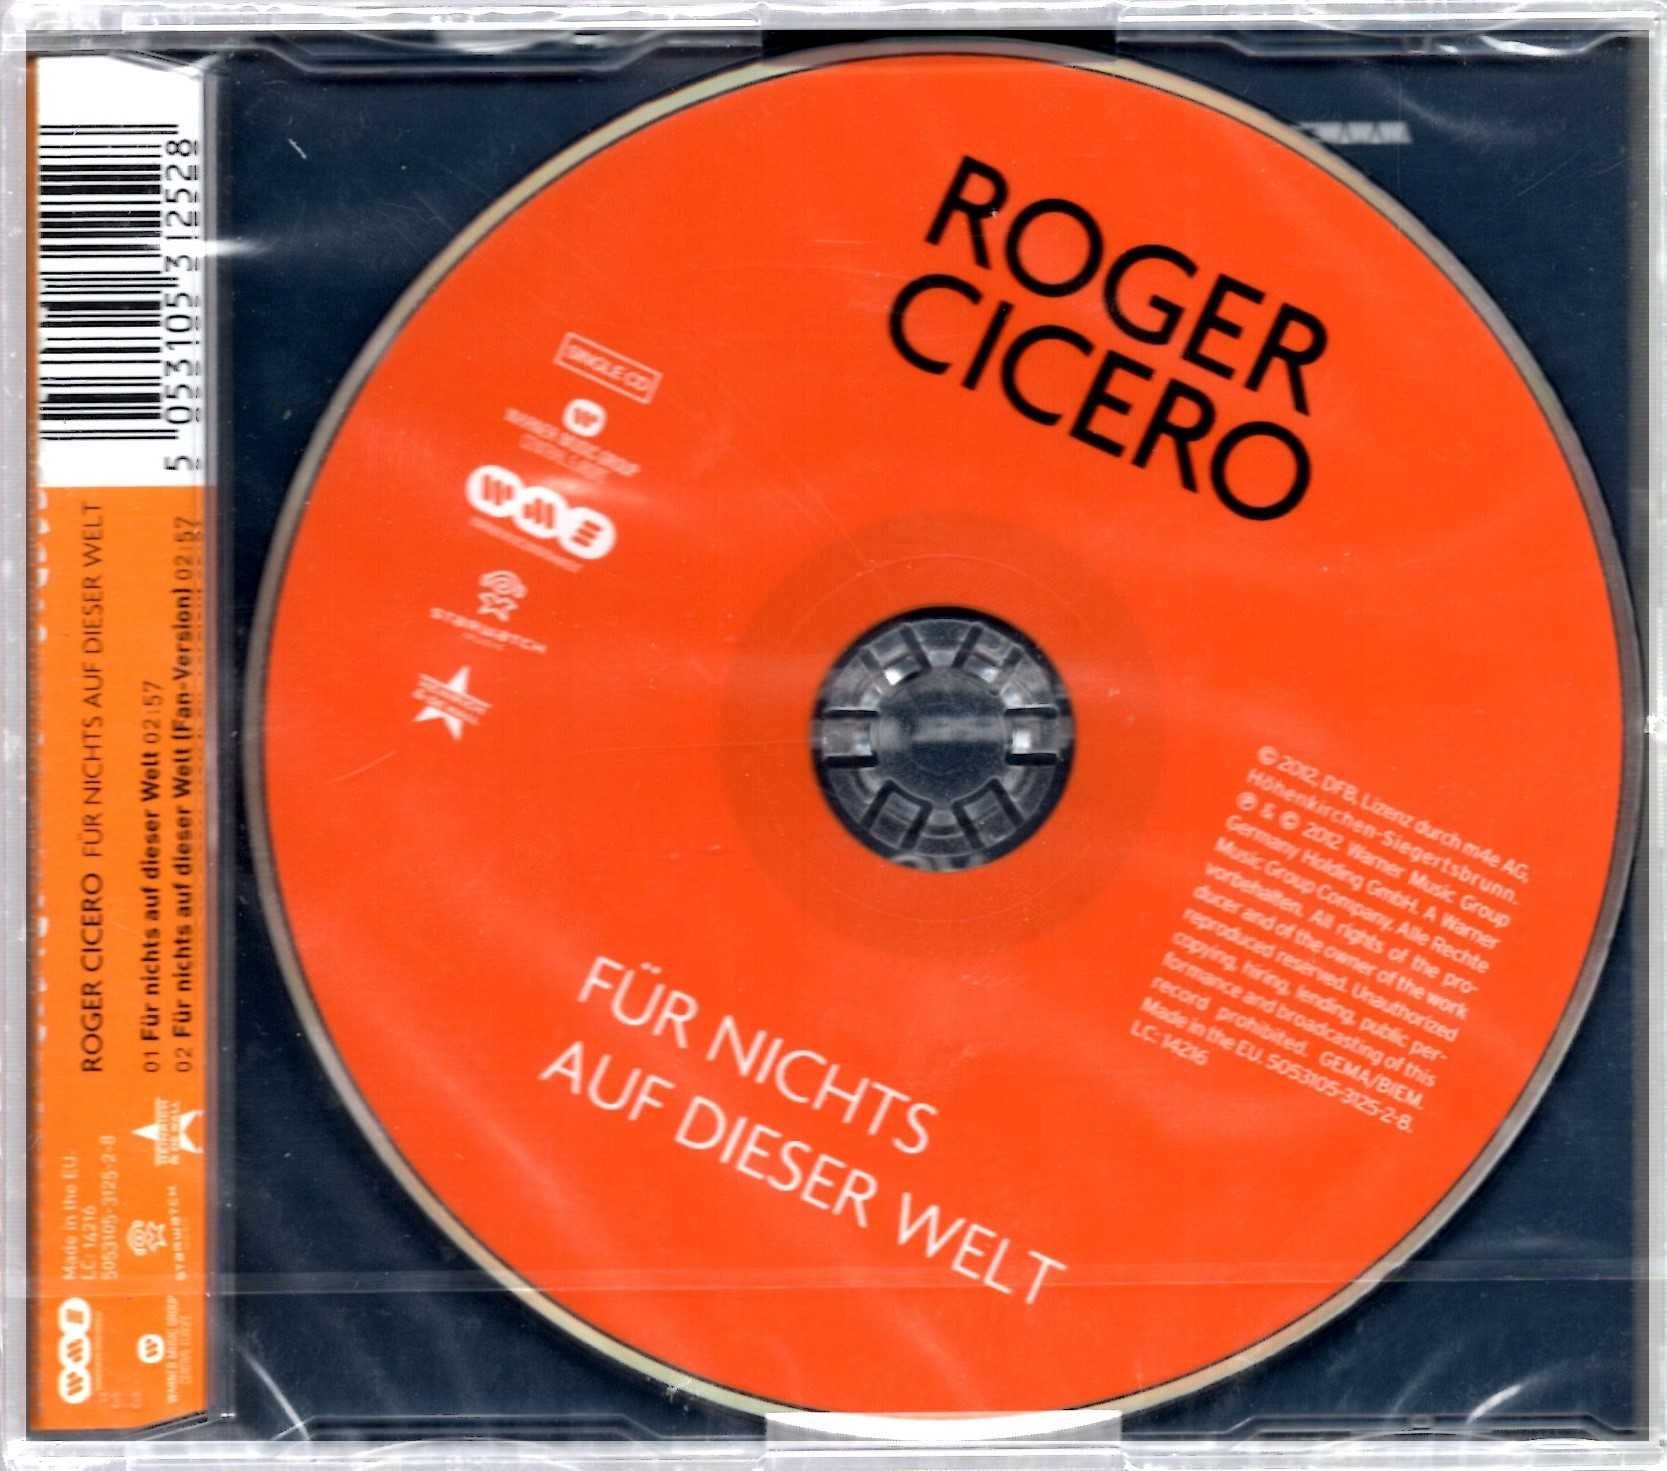 Roger Cicero - Fur Nichts Auf Dieser Welt (CD)